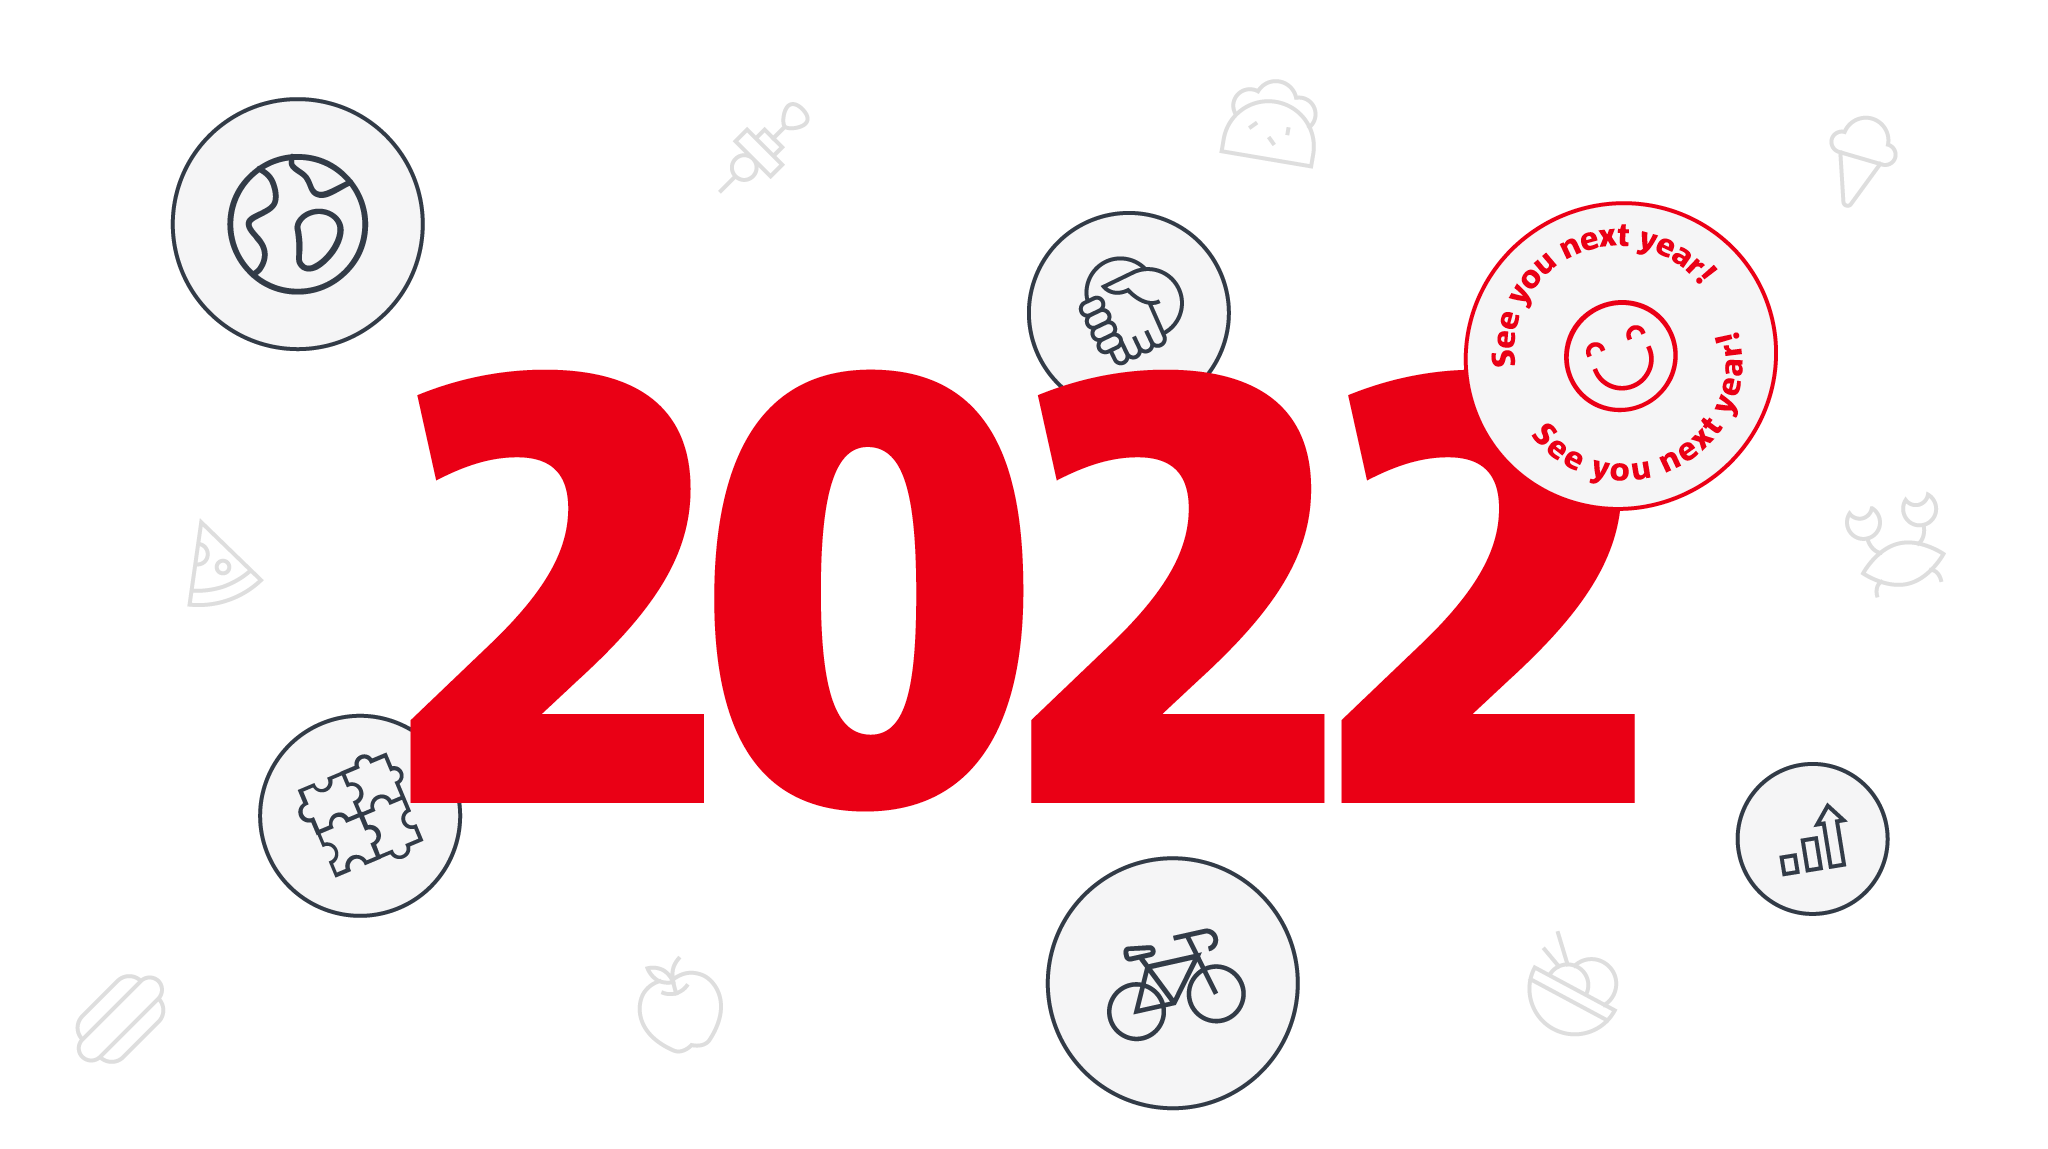 One last look: Goodbye 2022